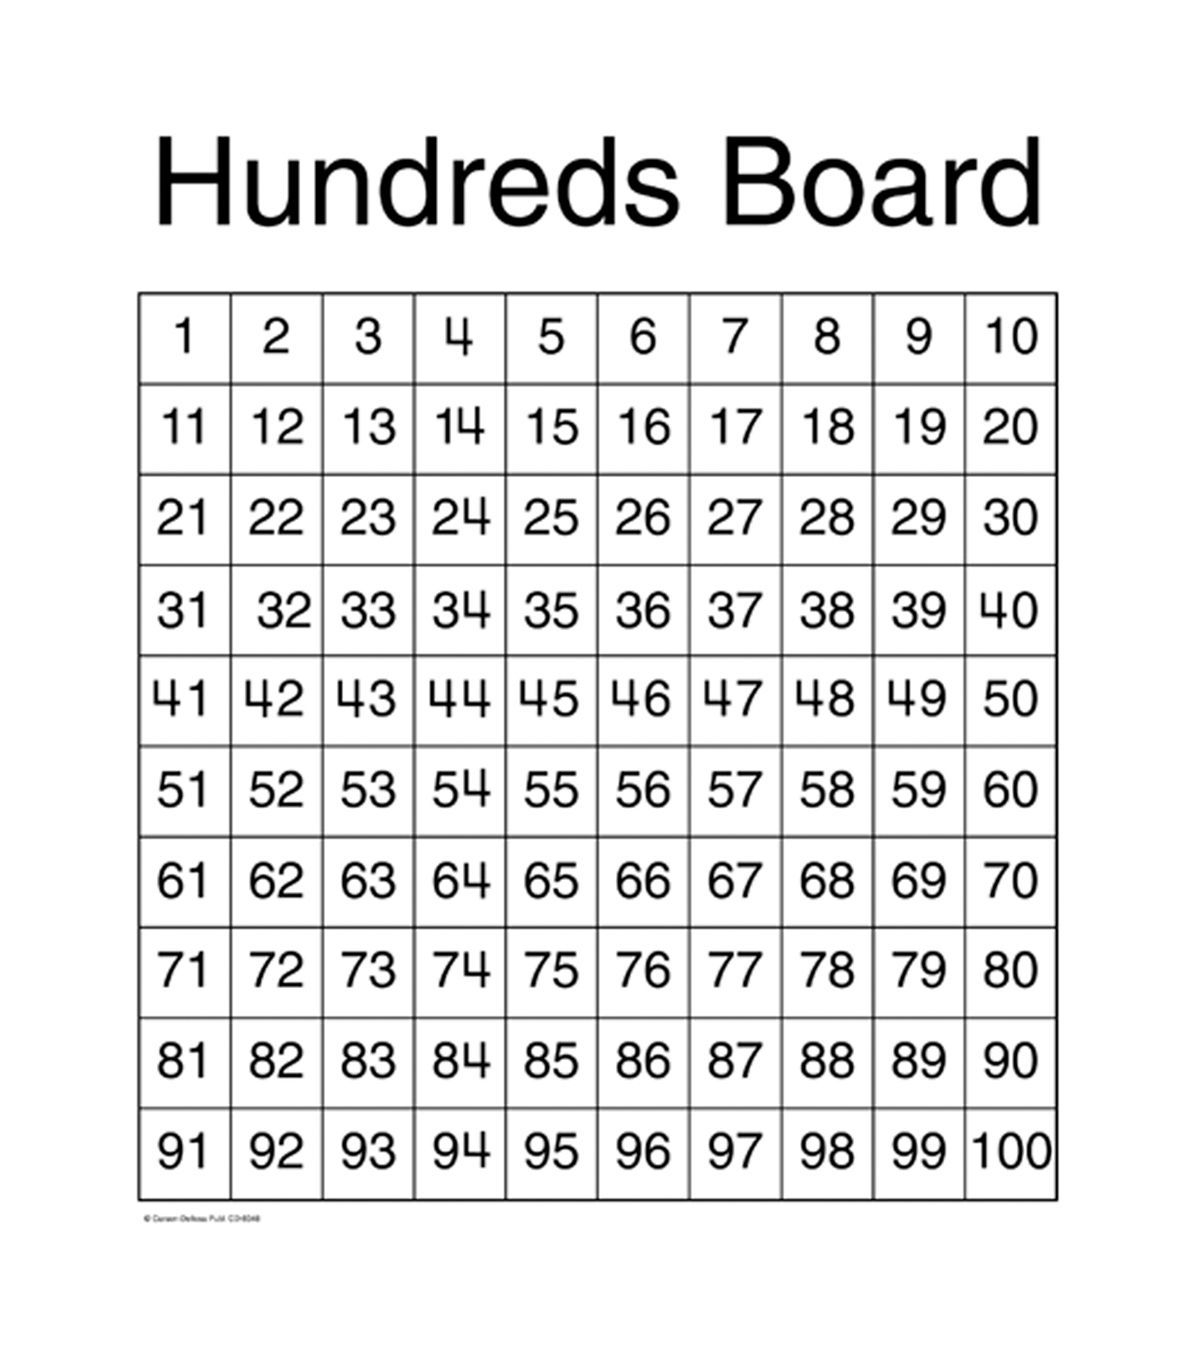 Carson Dellosa Hundreds Board Chart 6pk In 2020 Classroom Charts